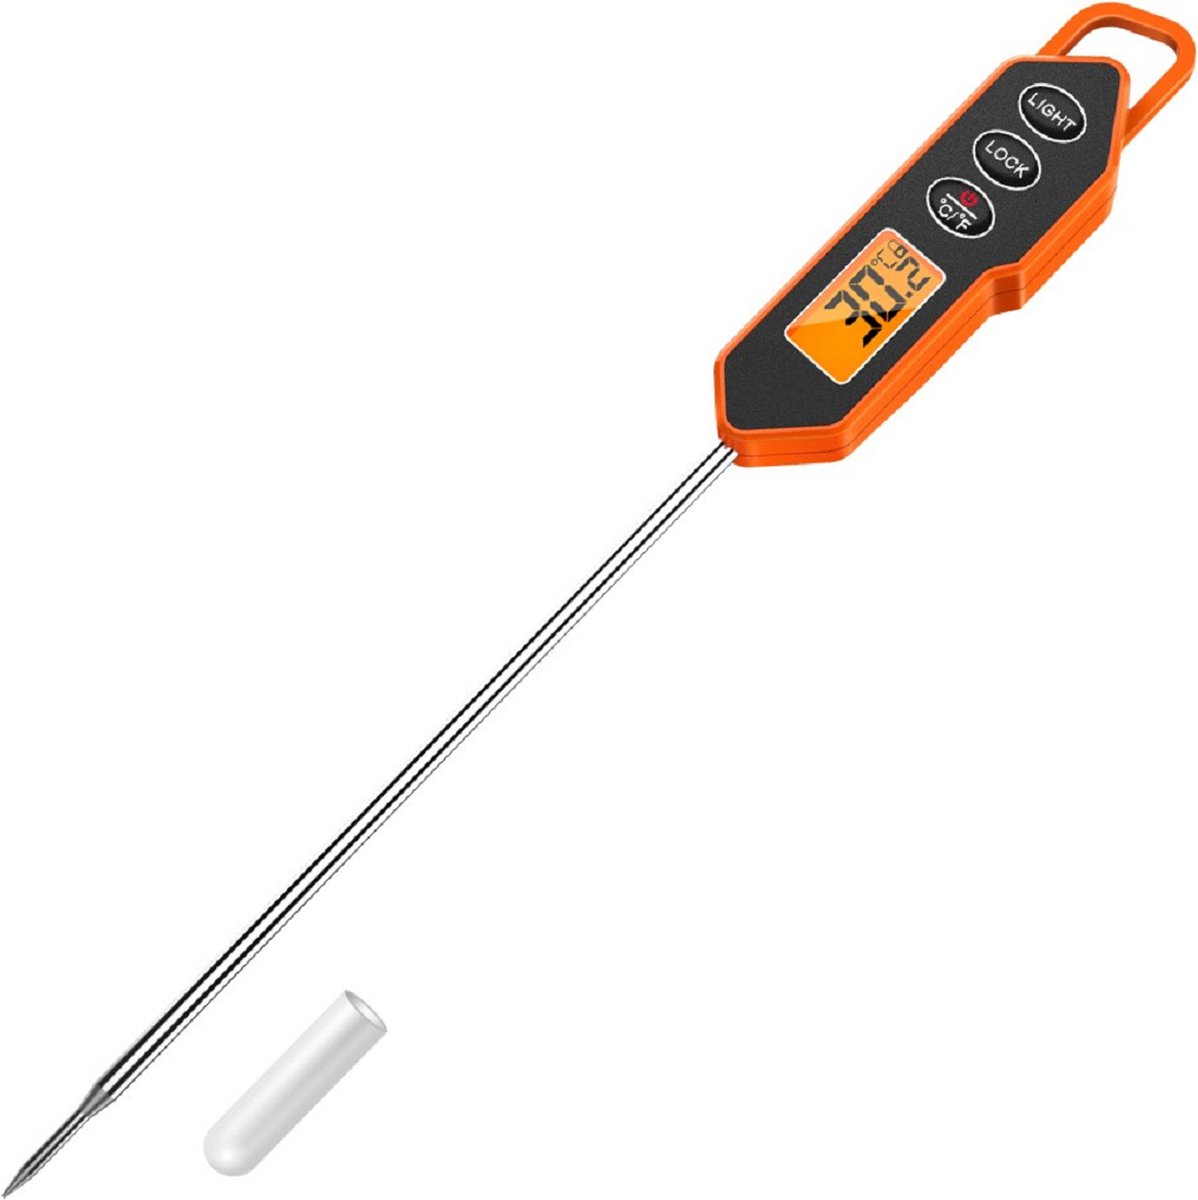 Mancor Voedselthermometer - Keukenthermometer - RVS - Mancor